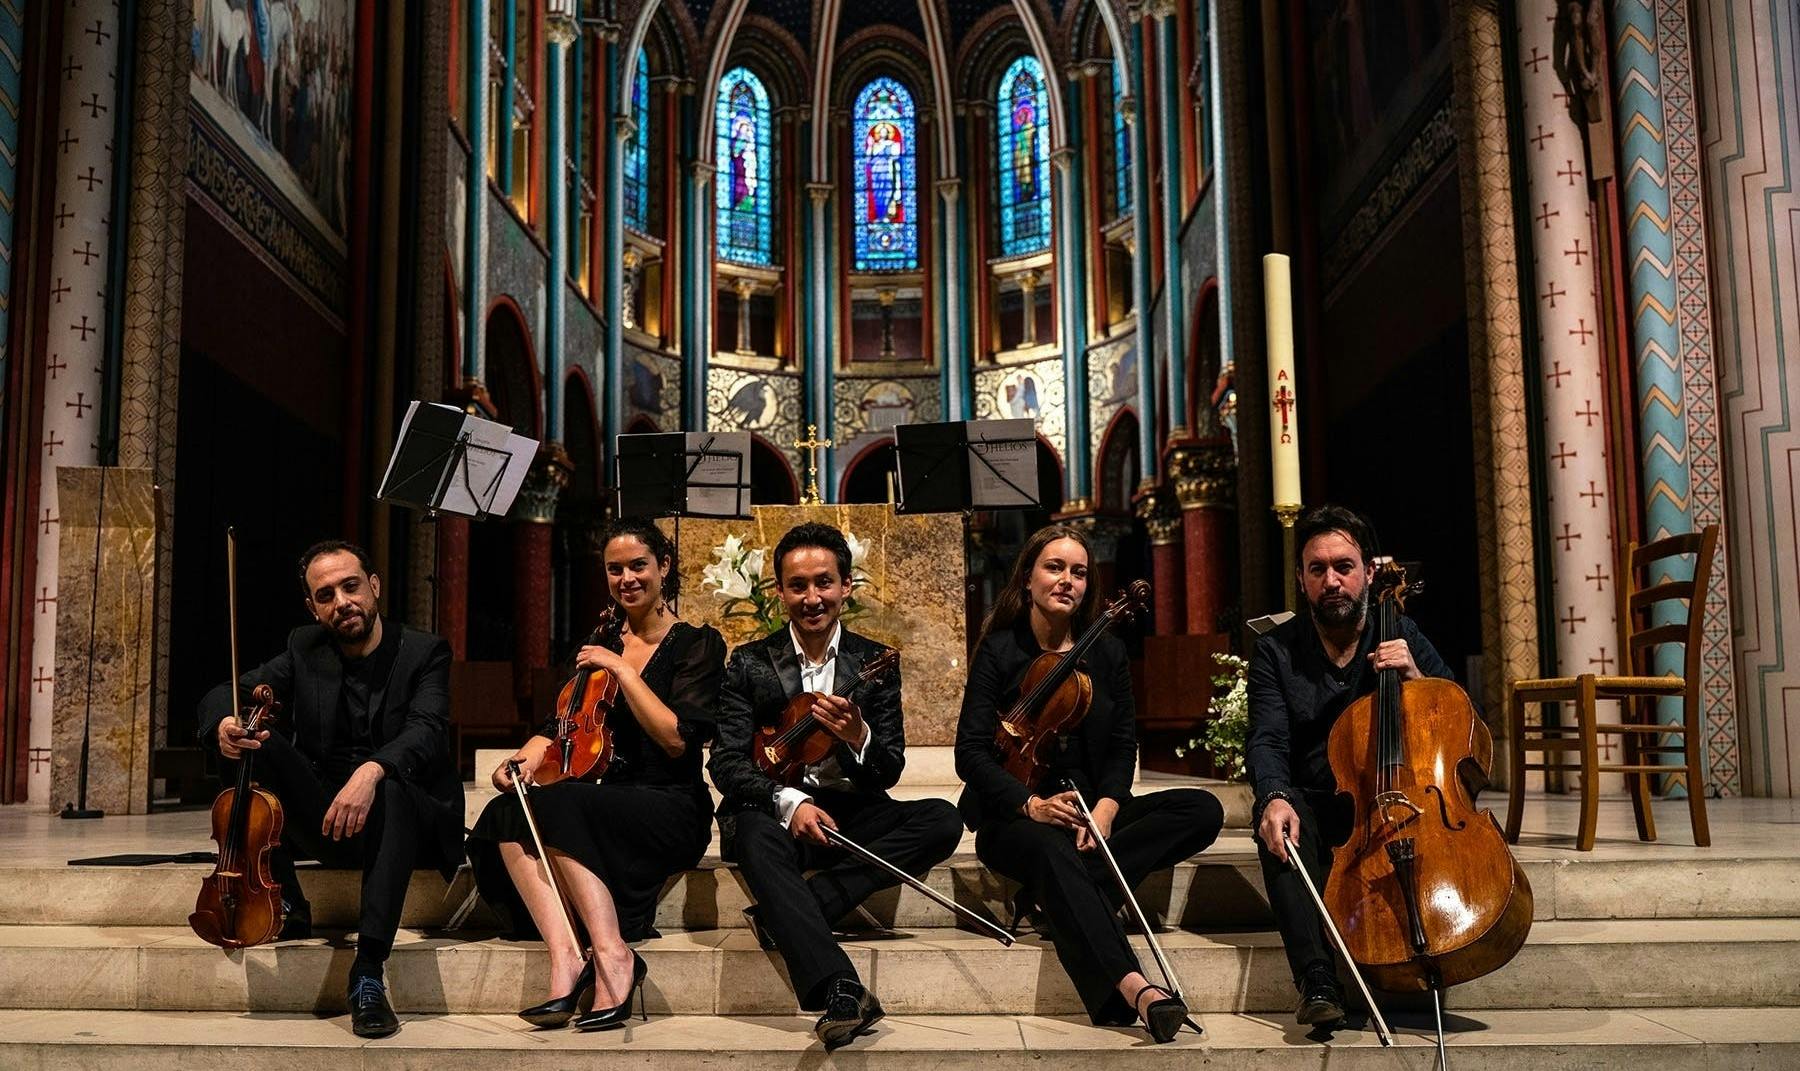 Entradas para conciertos de música clásica en la iglesia de Saint-Germain-des-Prés